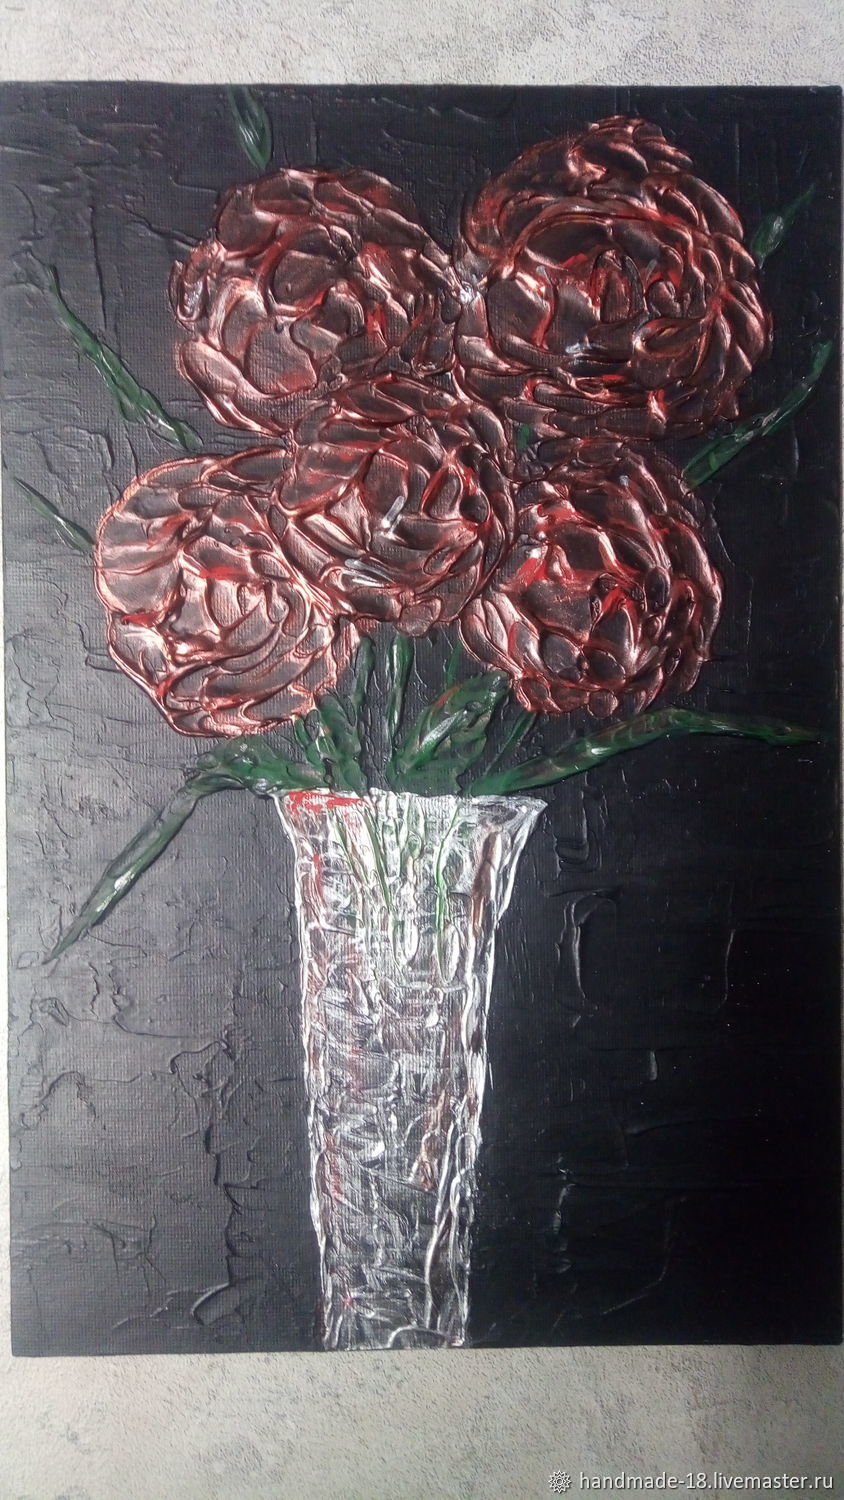  Красные розы в вазе. Абстракция на черном фоне, Картины, Тюмень,  Фото №1